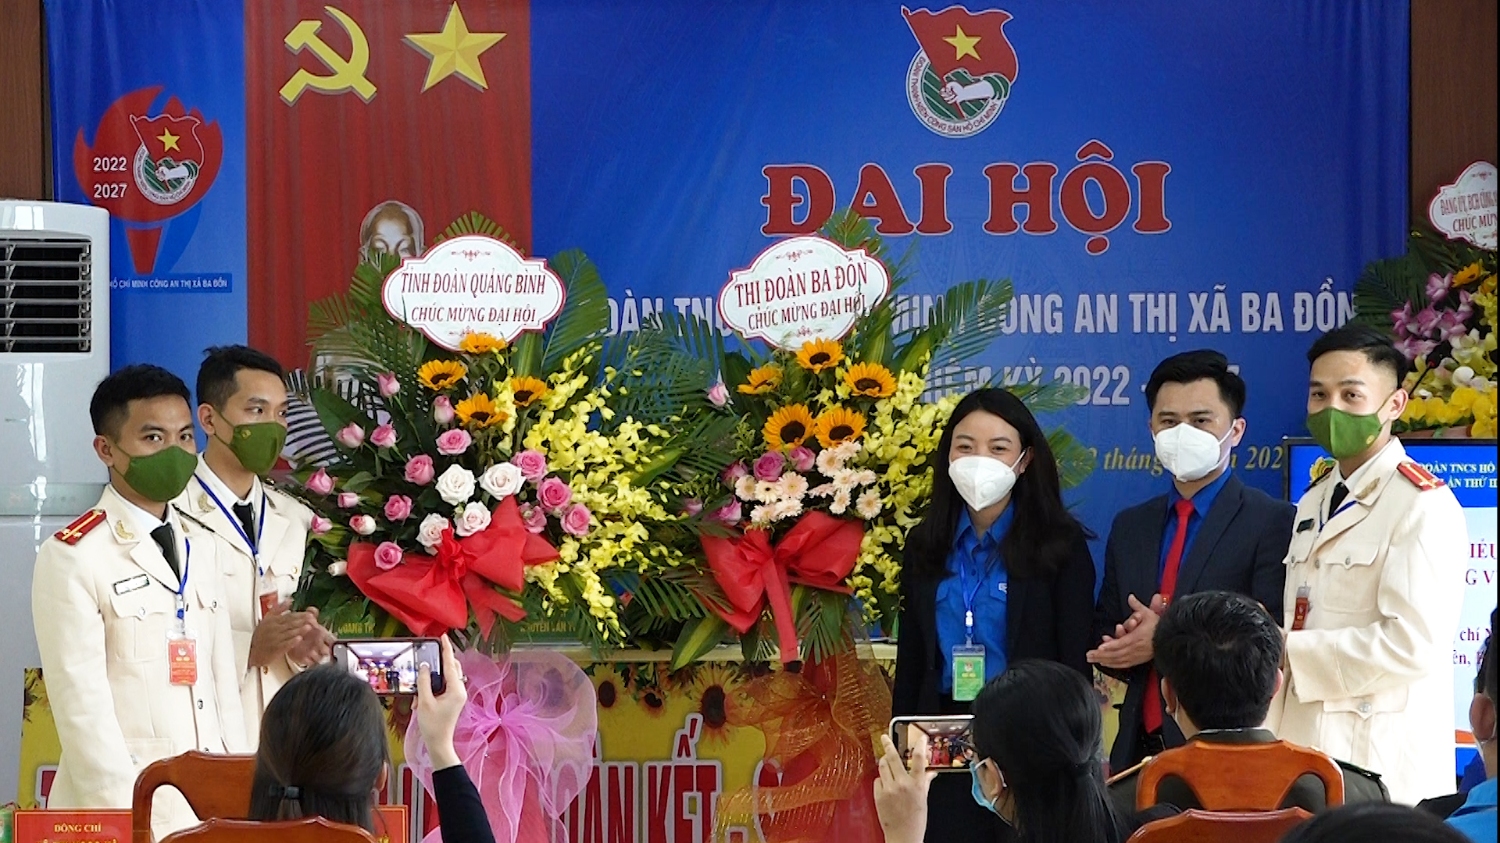 Tỉnh đoàn Quảng Bình và Thị đoàn Ba Đồn tặng hoa chúc mừng Đại hội